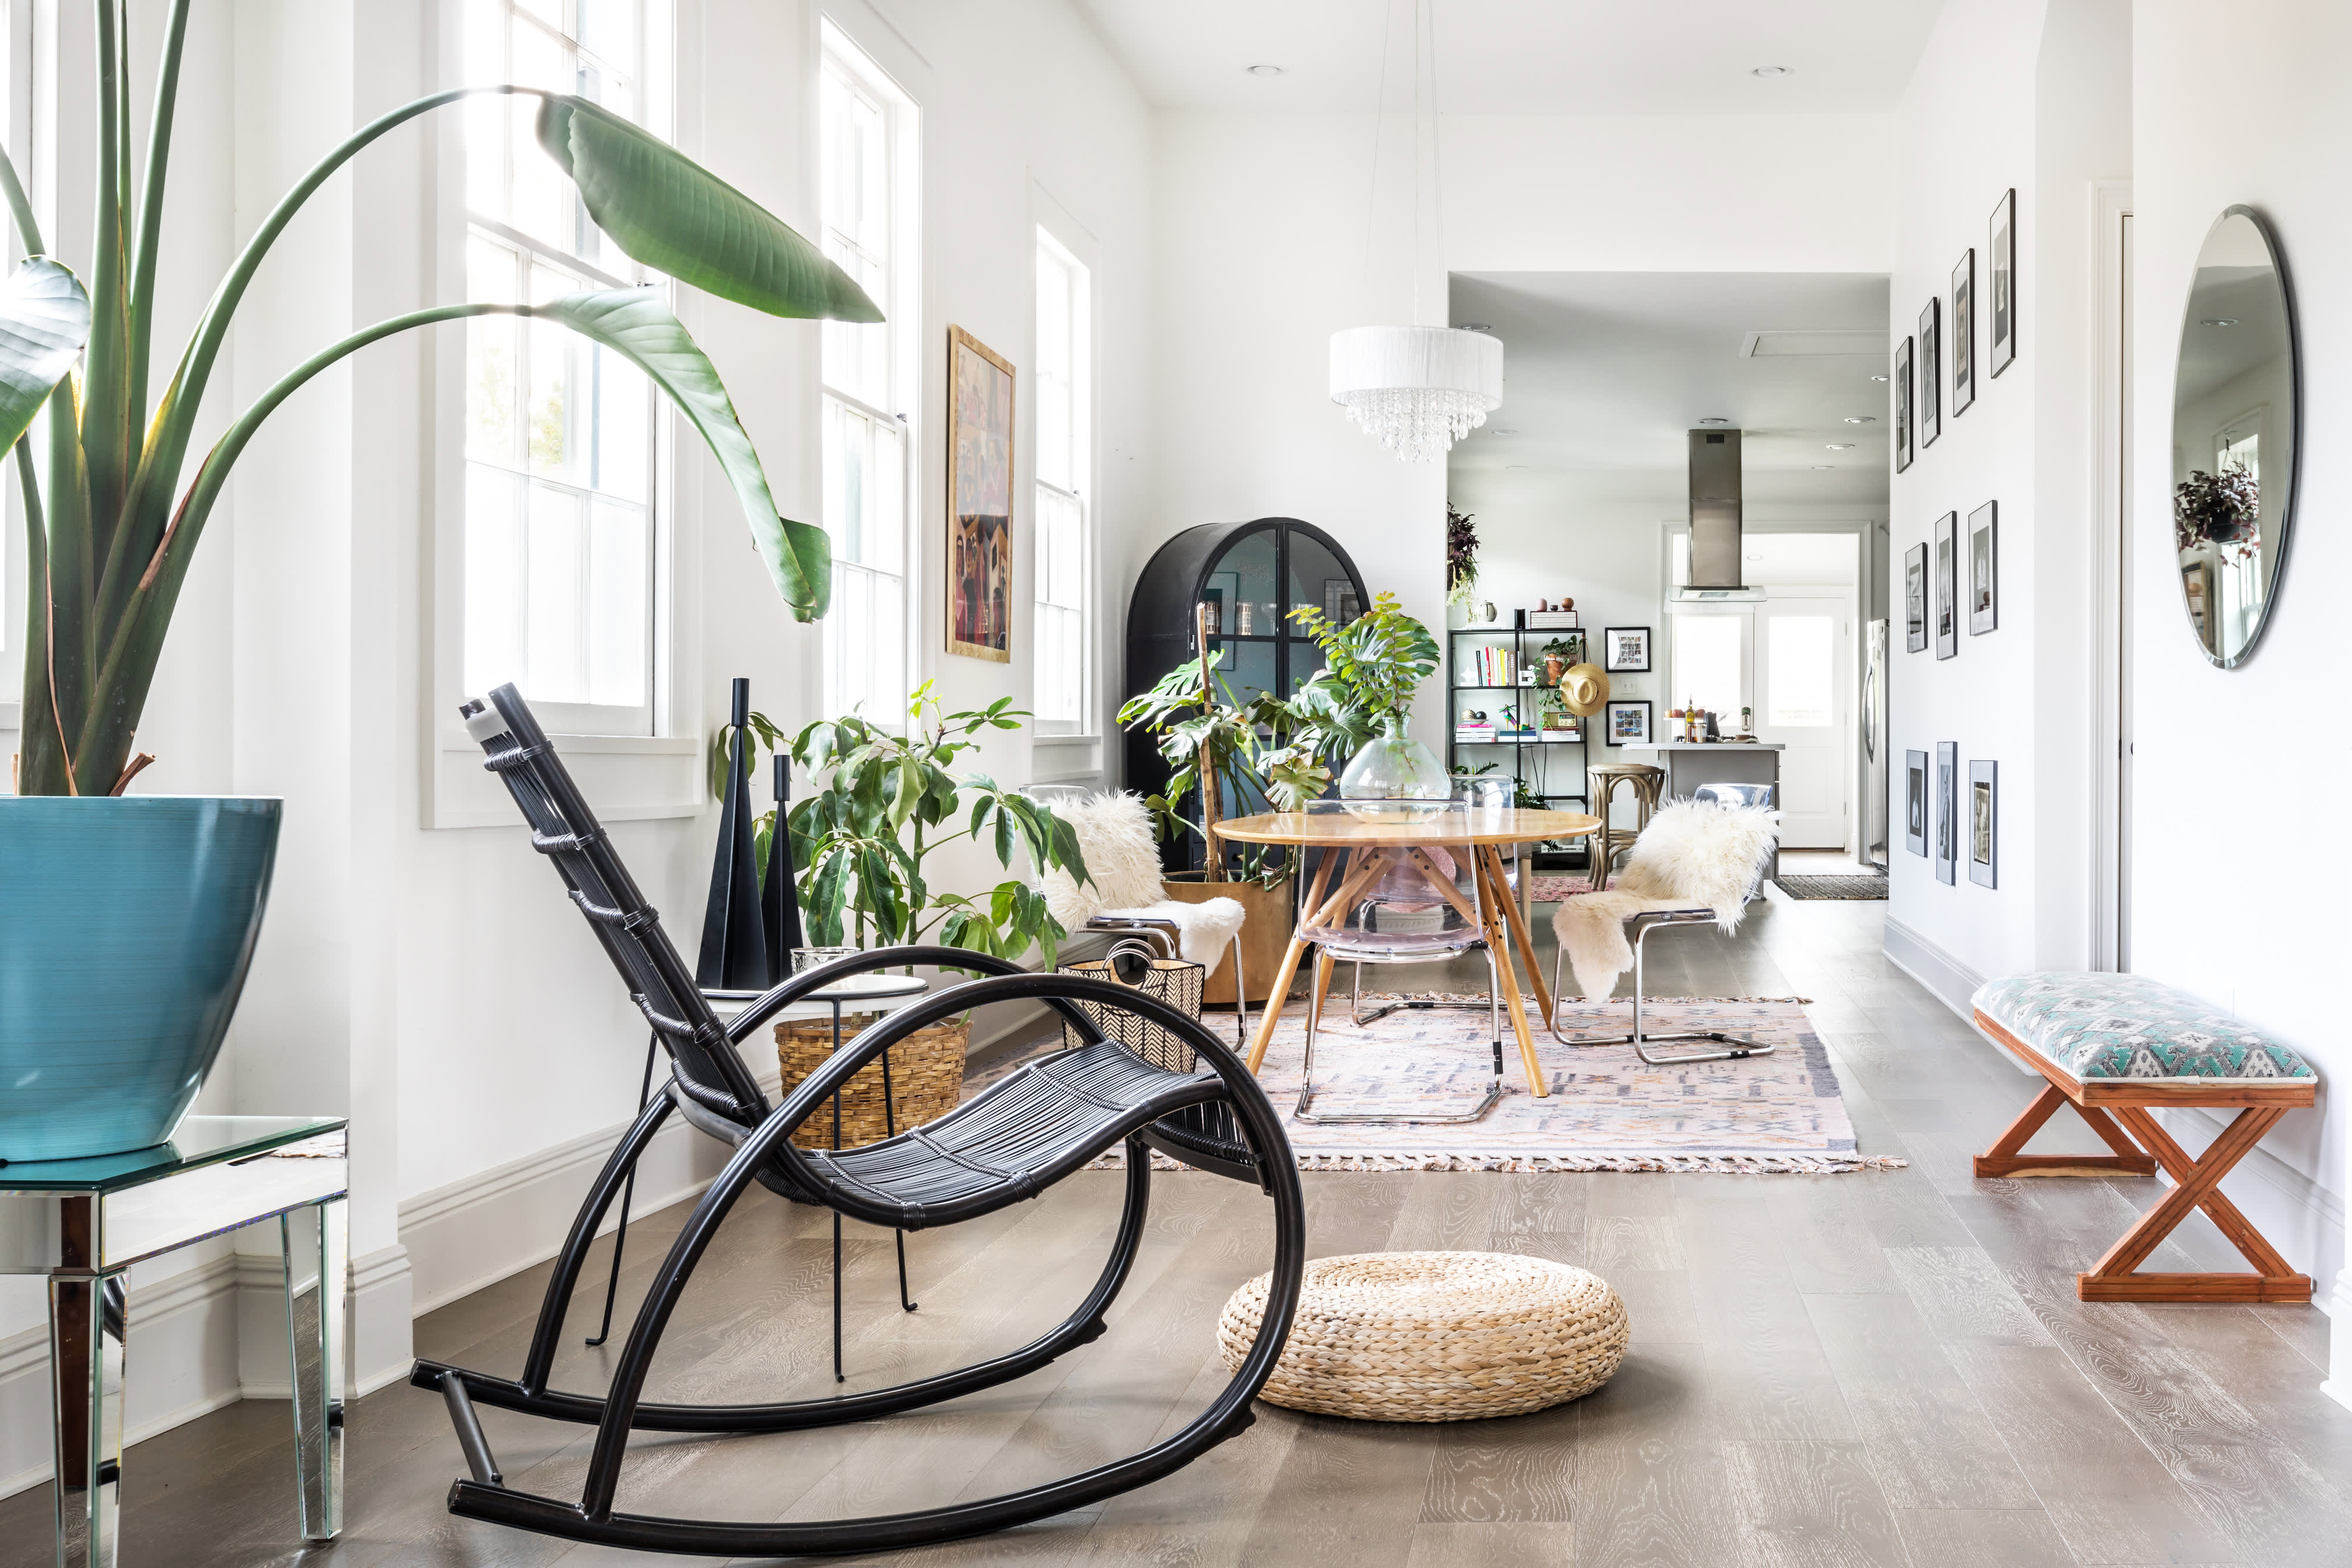 2019 Interior Design Trends Home Decor Trends 2019